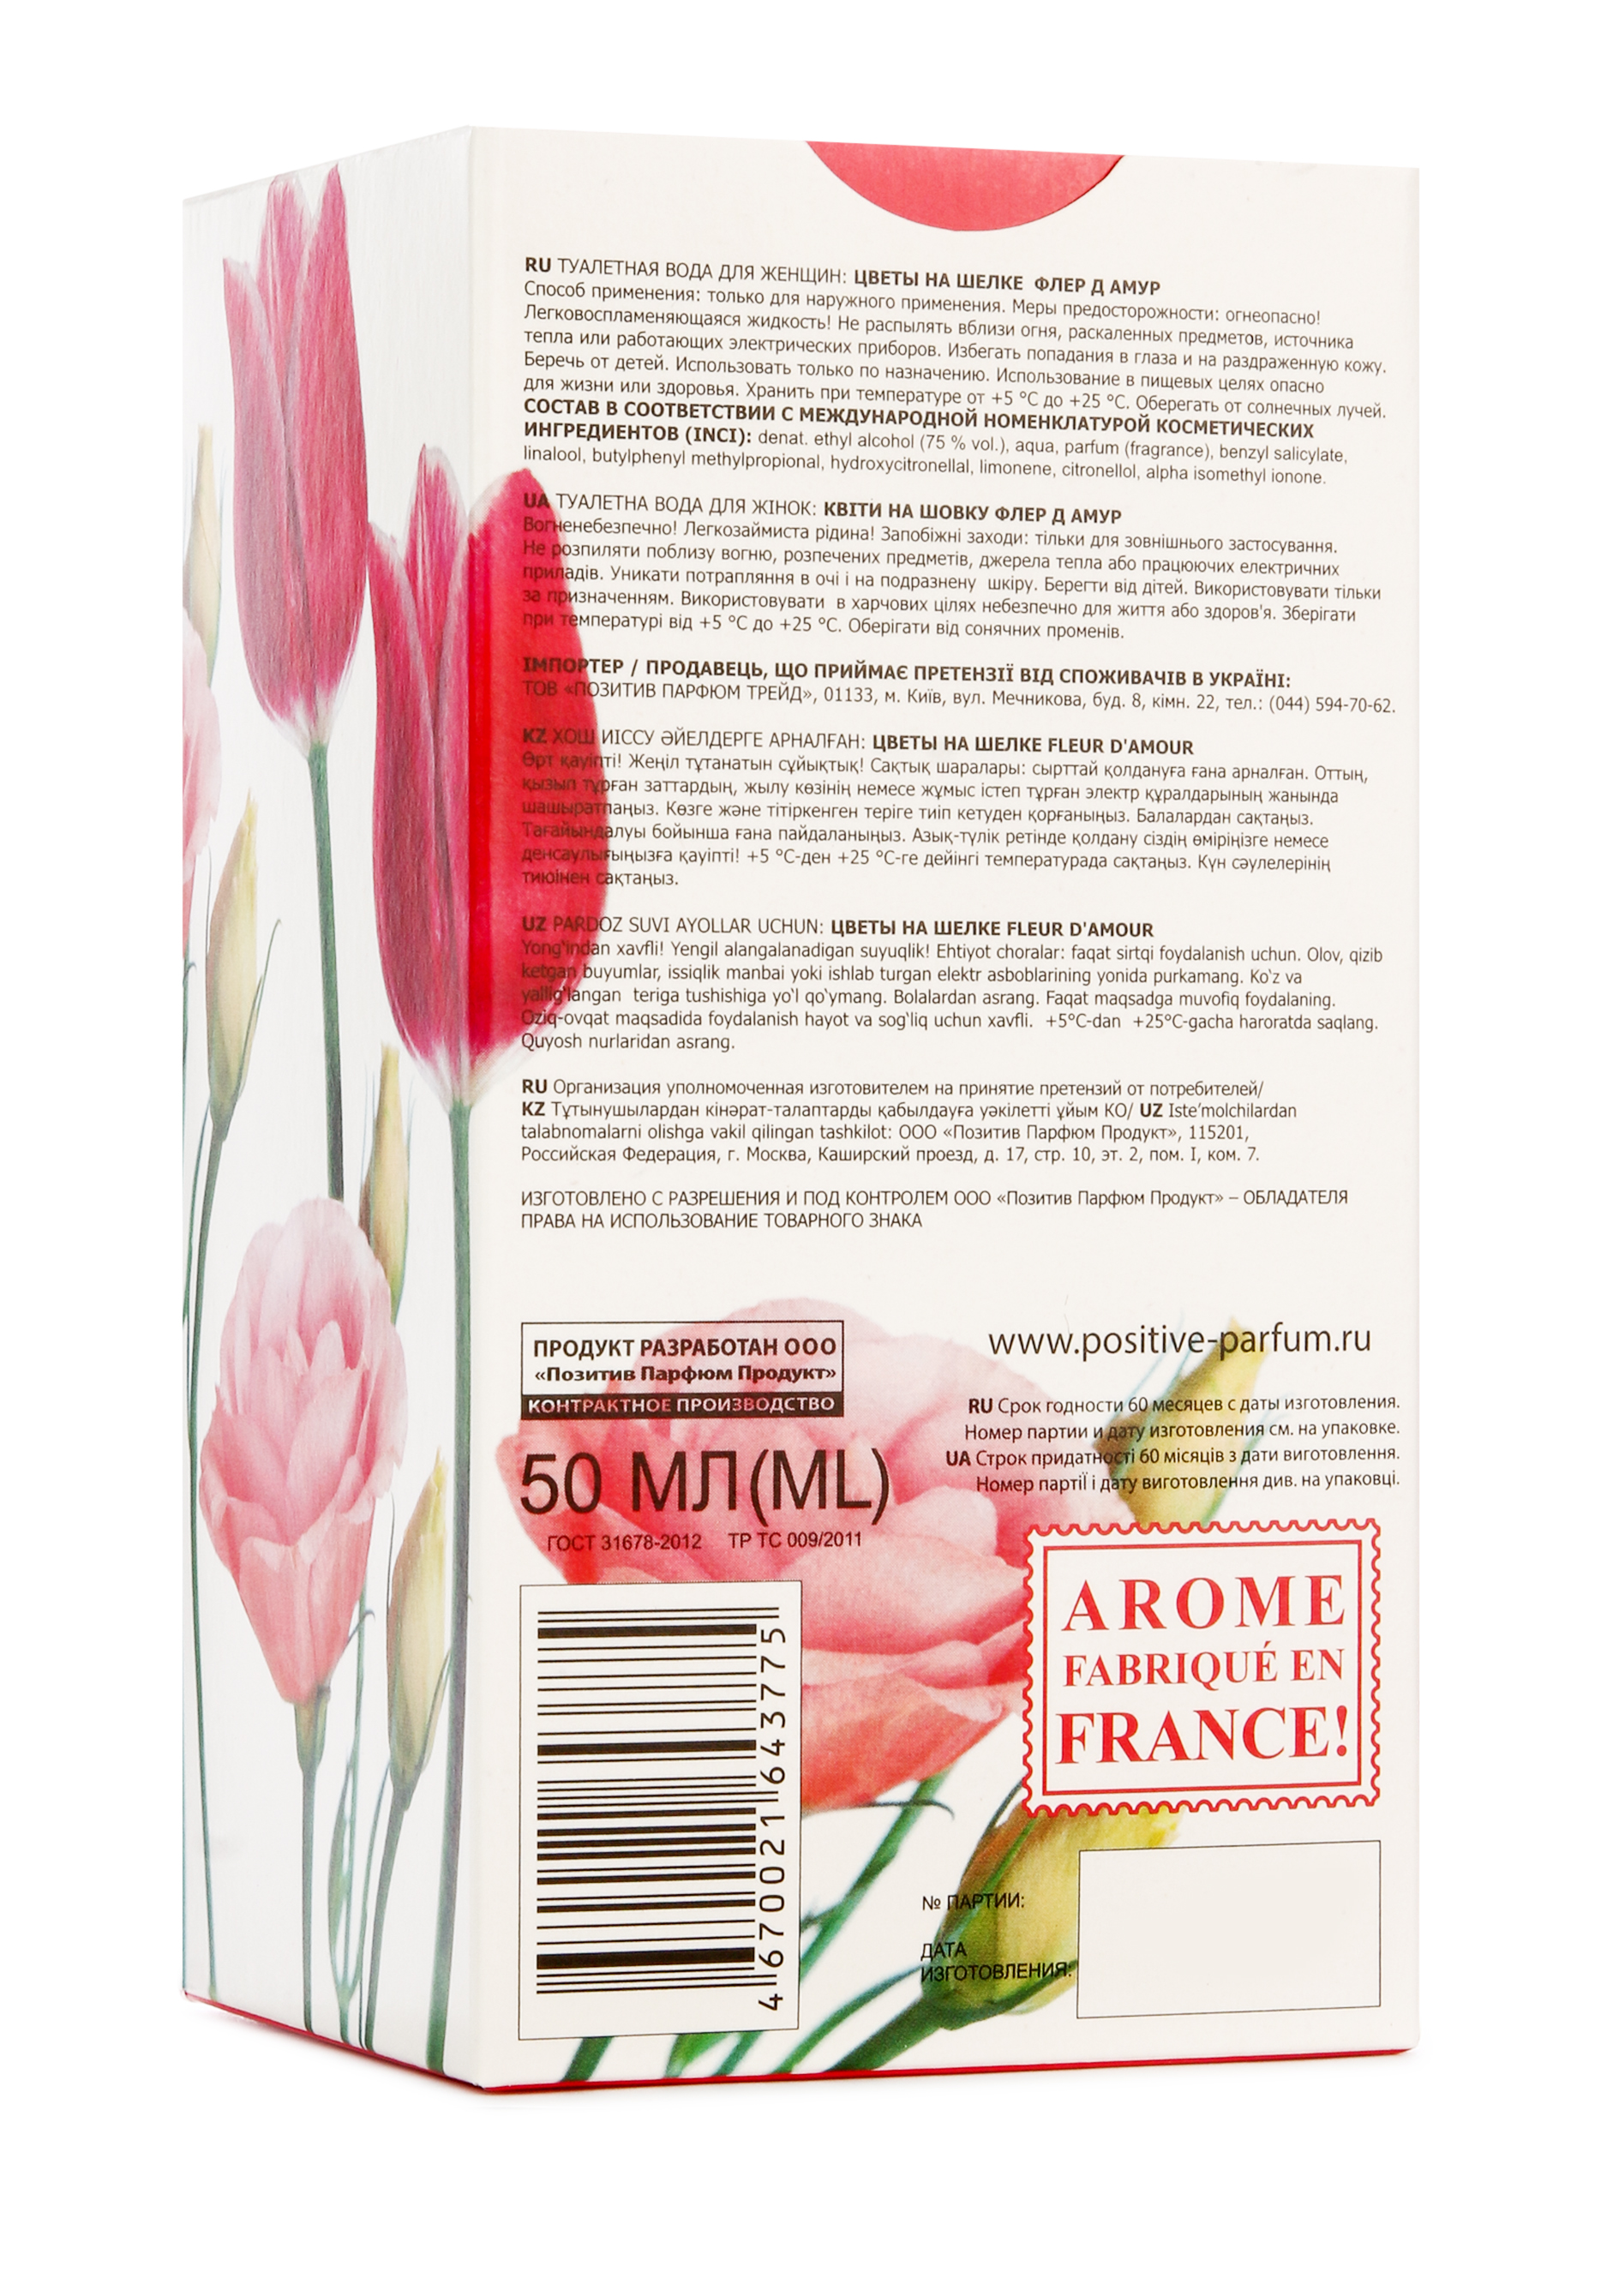 Парфюмерный набор "Цветы на шелке" 3 в 1 Positive Parfum - фото 4